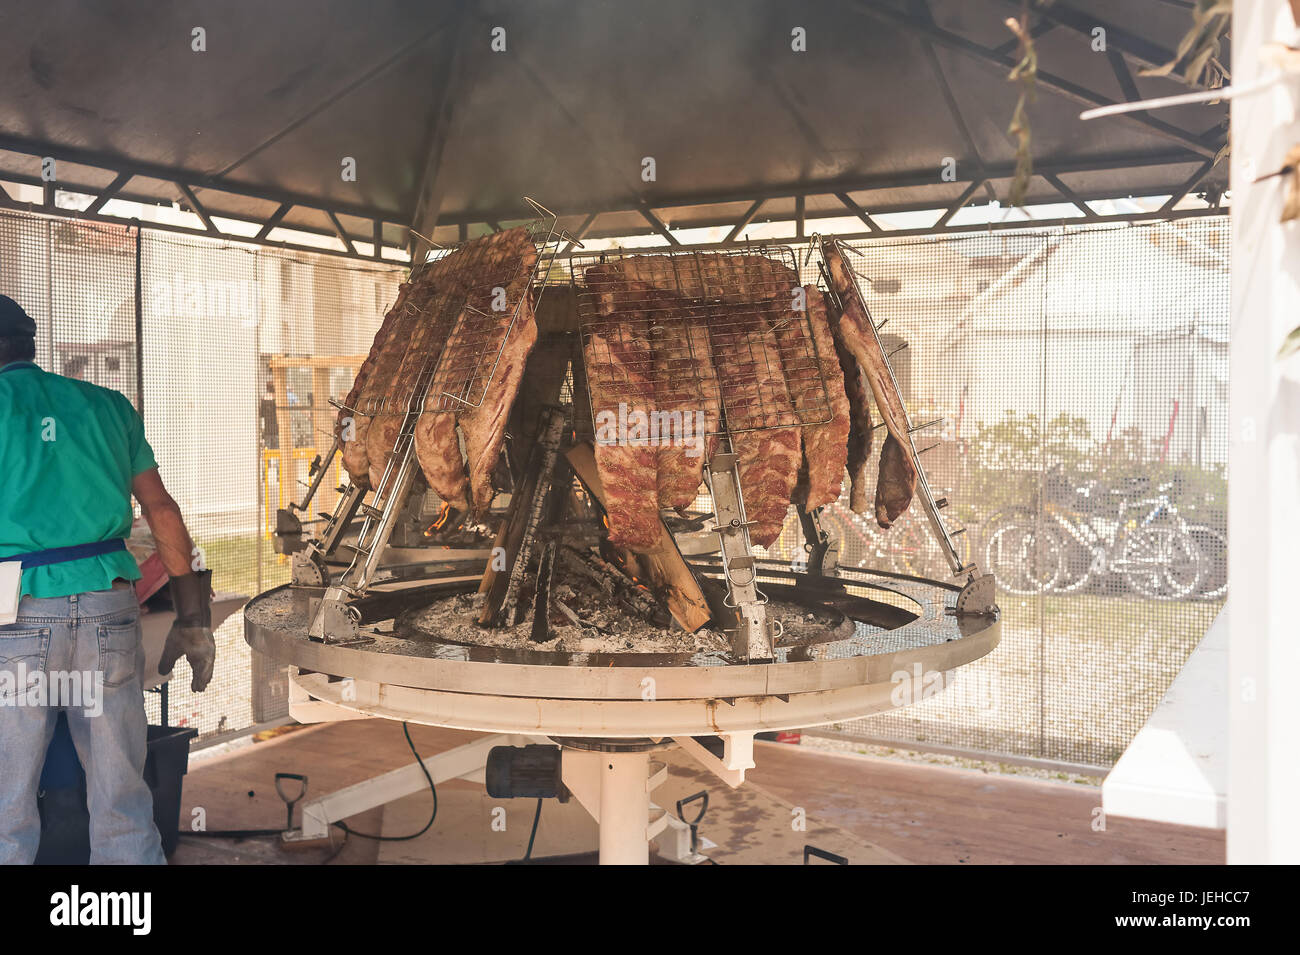 Barbecue traditionnel asado, lave en Argentine. La viande rôtie de boeuf cuit sur un gril vertical placé autour de fire Banque D'Images